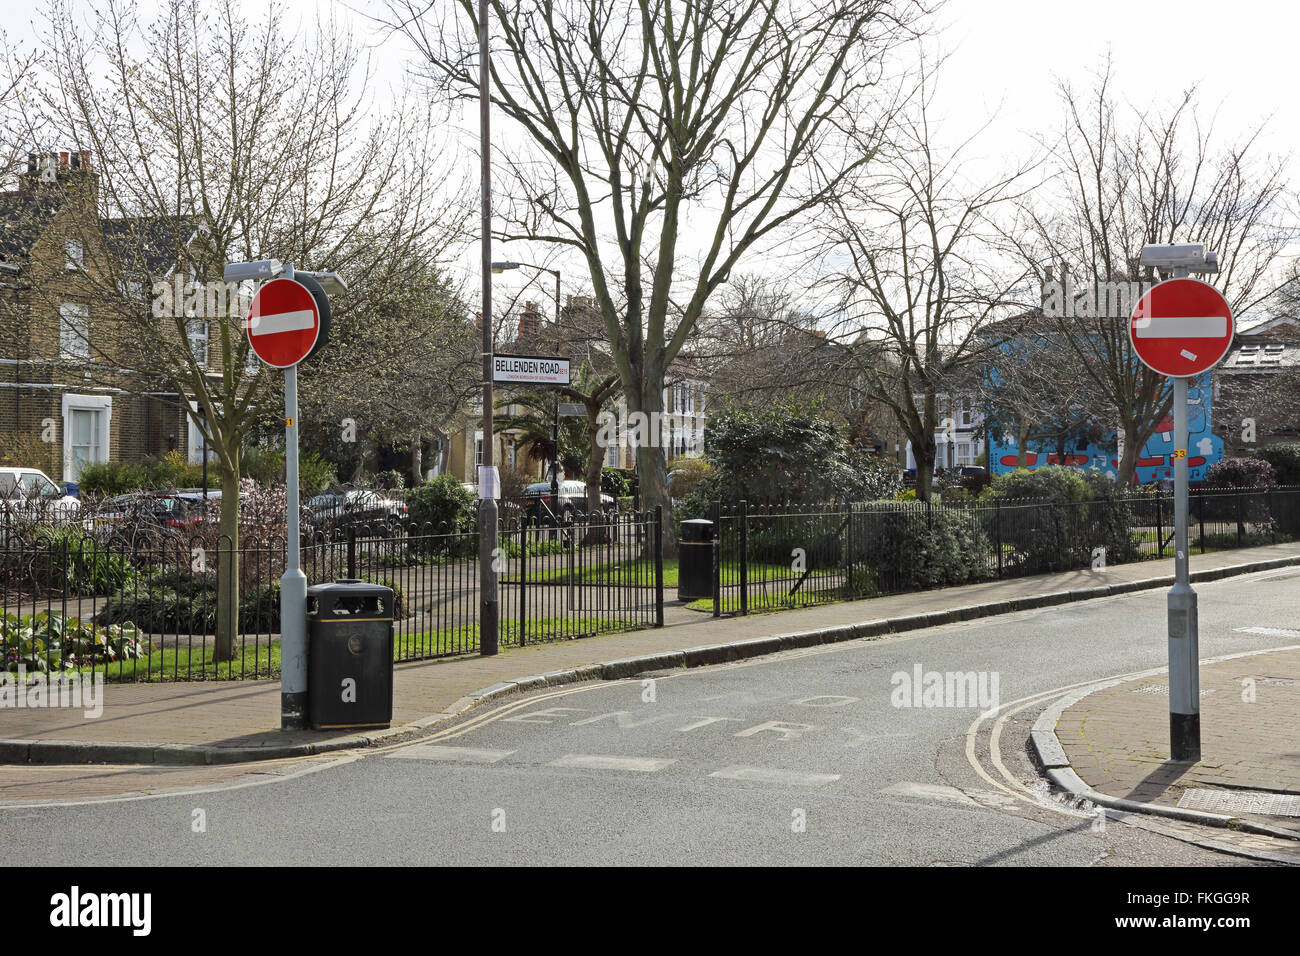 William Griggs Jardins. Un petit parc, sur la route de Bellenden Peckham, Londres. Atmosphère de village dans le fameux quartier pauvre. Banque D'Images